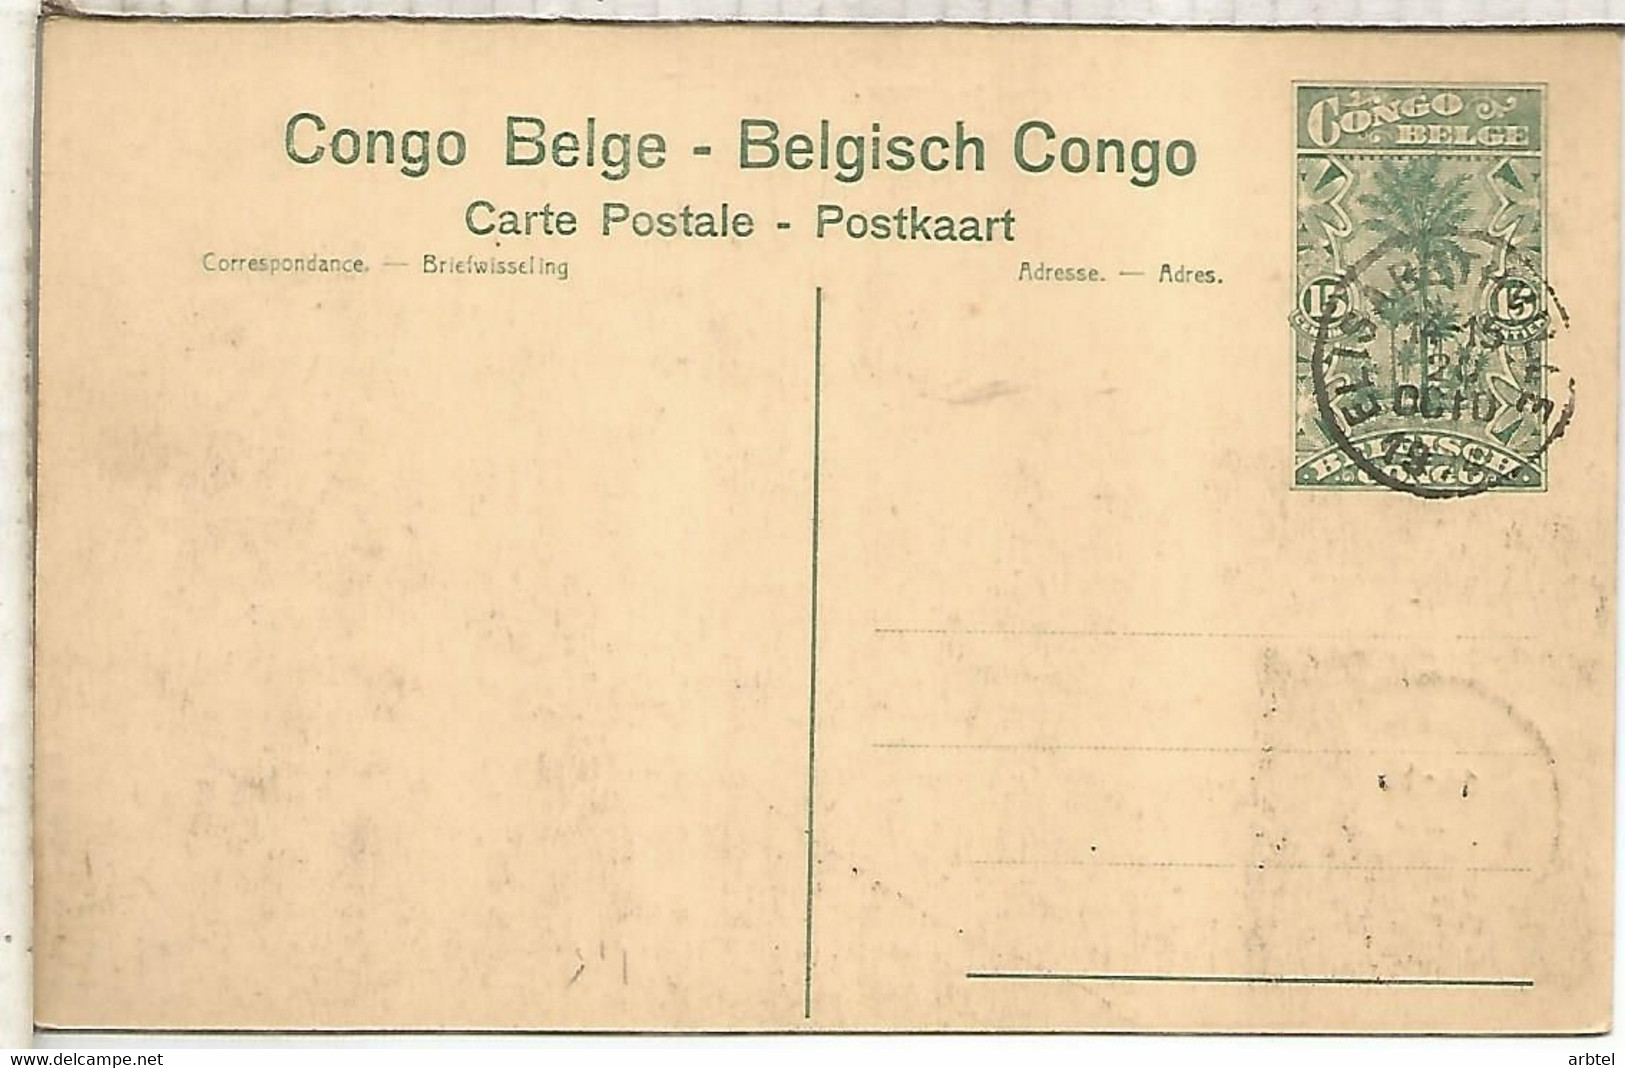 CONGO BELGA ENTERO POSTAL STATIONERY CARD PATATA POTATO AGROCULTURA ALIMENTACION - Agriculture